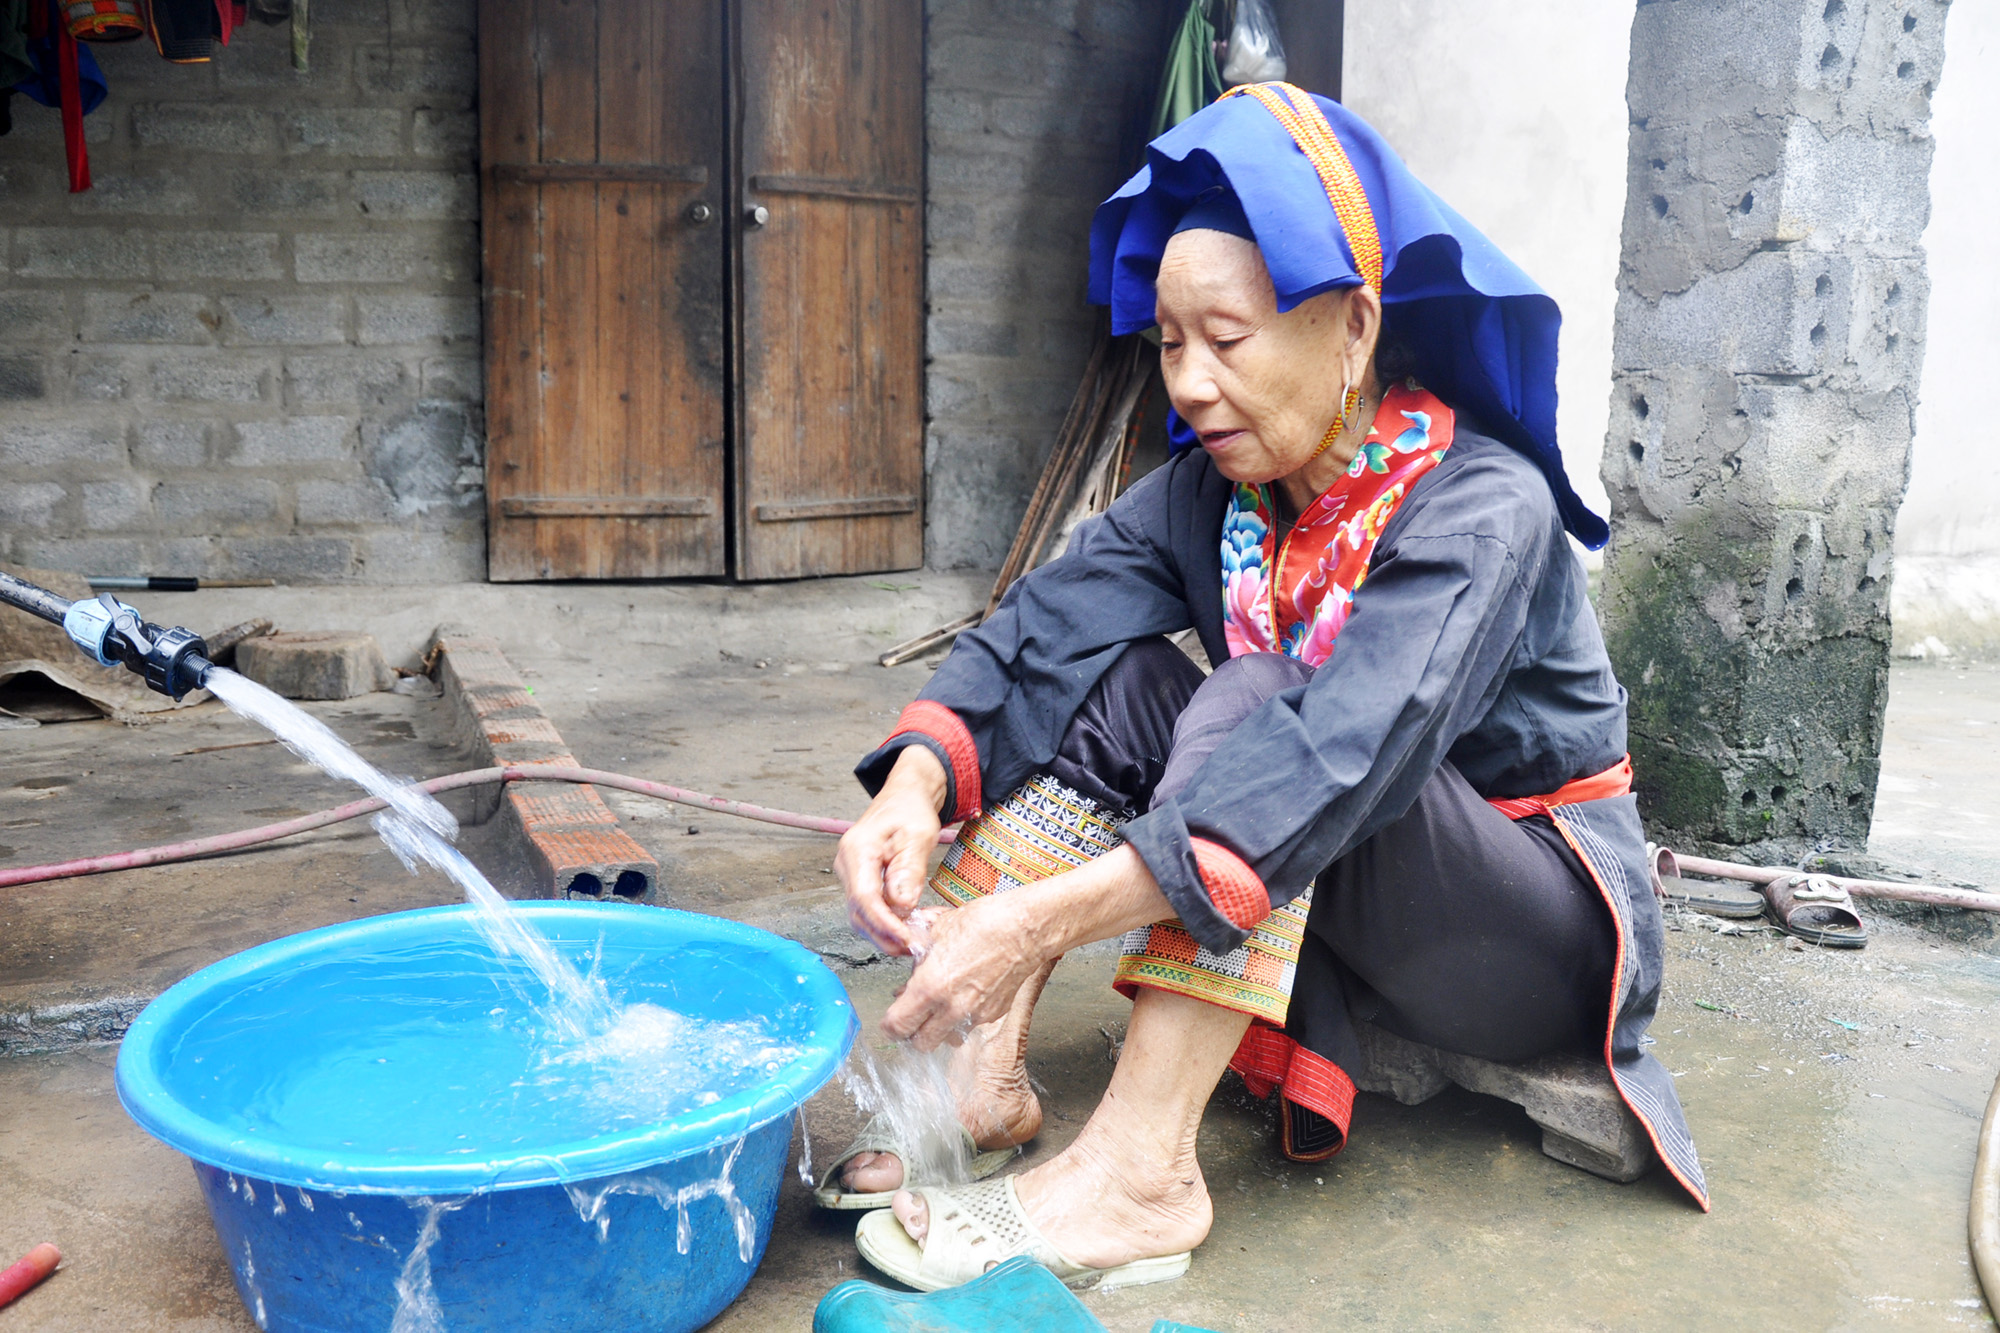 Hộ bà Triệu Thị Ba cũng như các hộ ở thôn Nà Bắp (xã Đồn Đạc, huyện Ba Chẽ) đã được sử dụng nước hợp vệ sinh từ công trình nước sinh hoạt tập trung do Nhà nước hỗ trợ xây dựng. Ảnh: Thu Chung